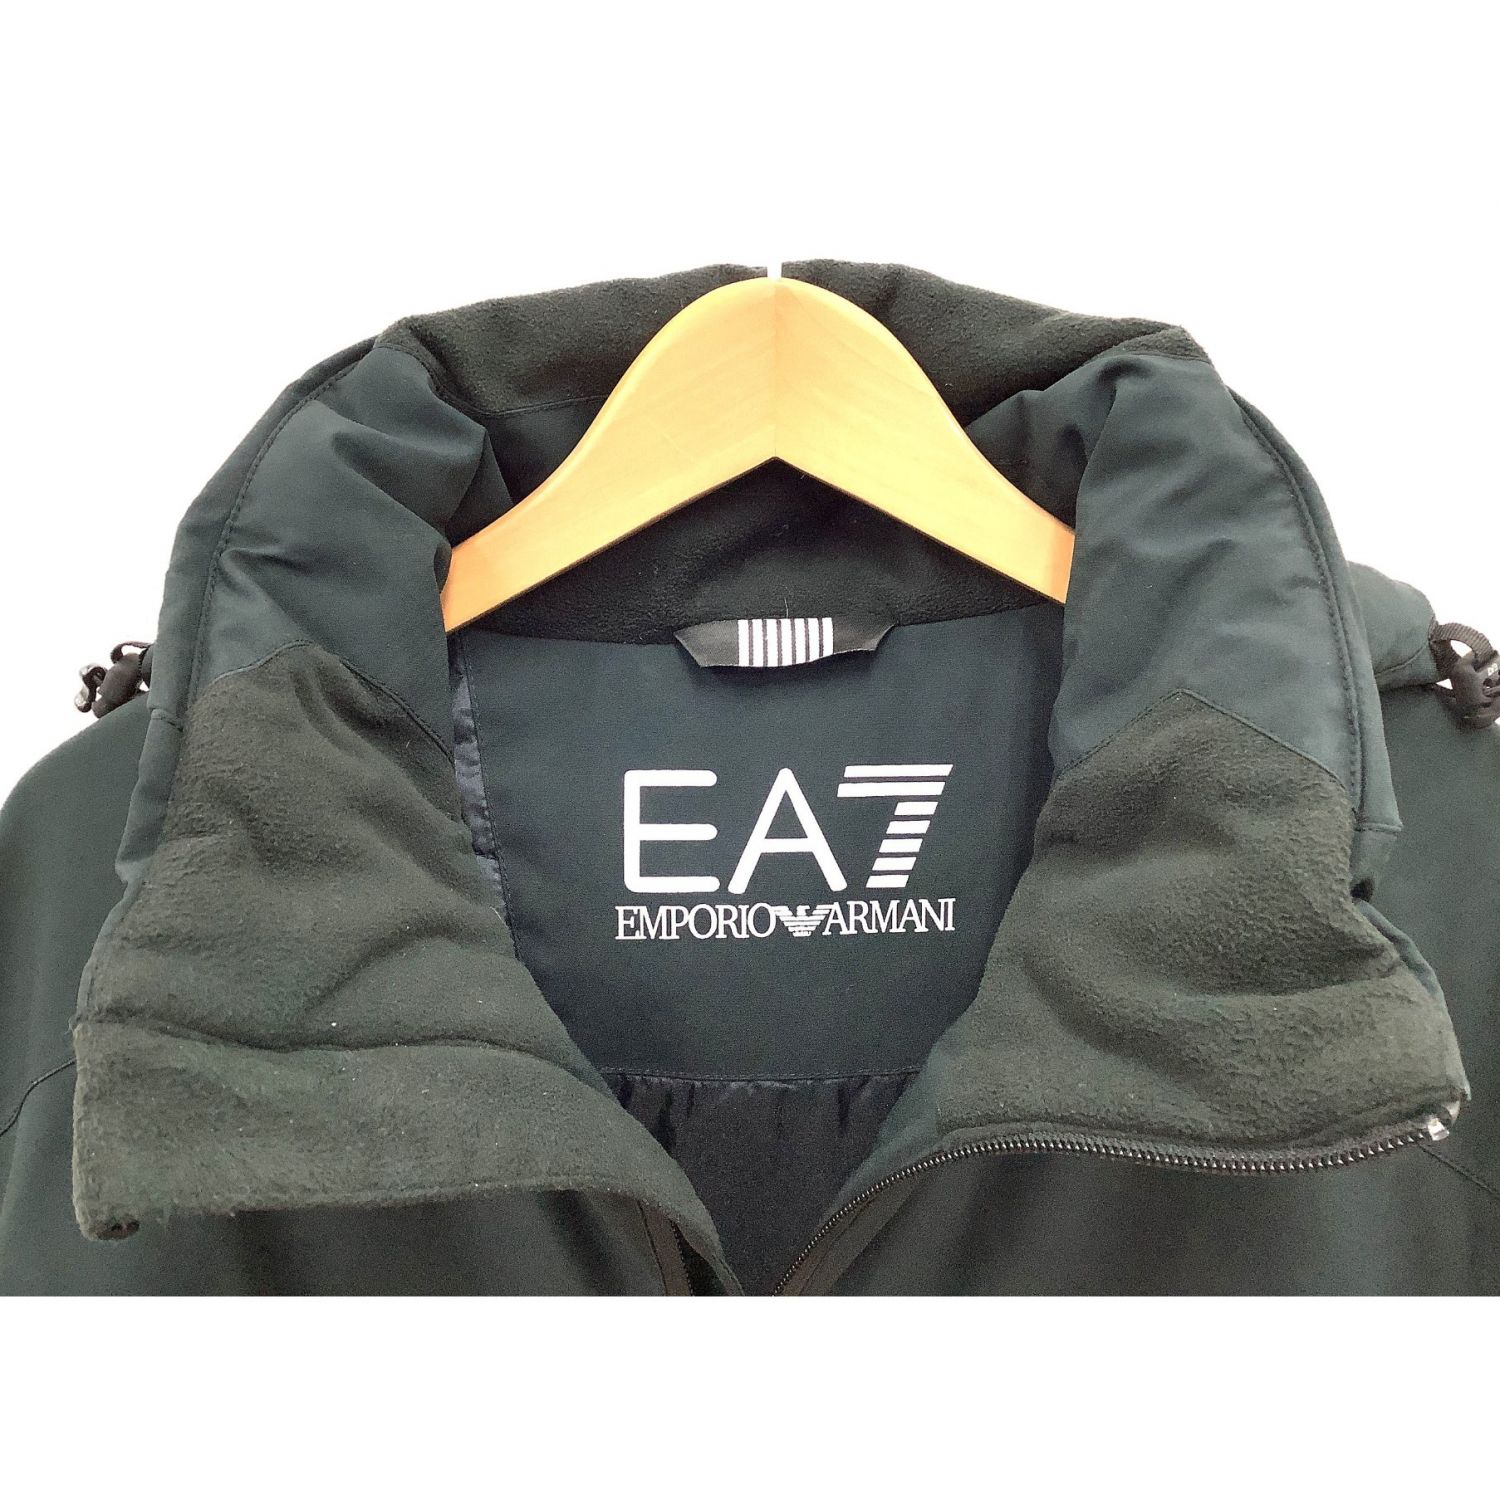 EMPORIO ARMANI EA7 (エンポリオ アルマーニ イーエーセブン) スキーウェア(ジャケット) メンズ SIZE M ブラック